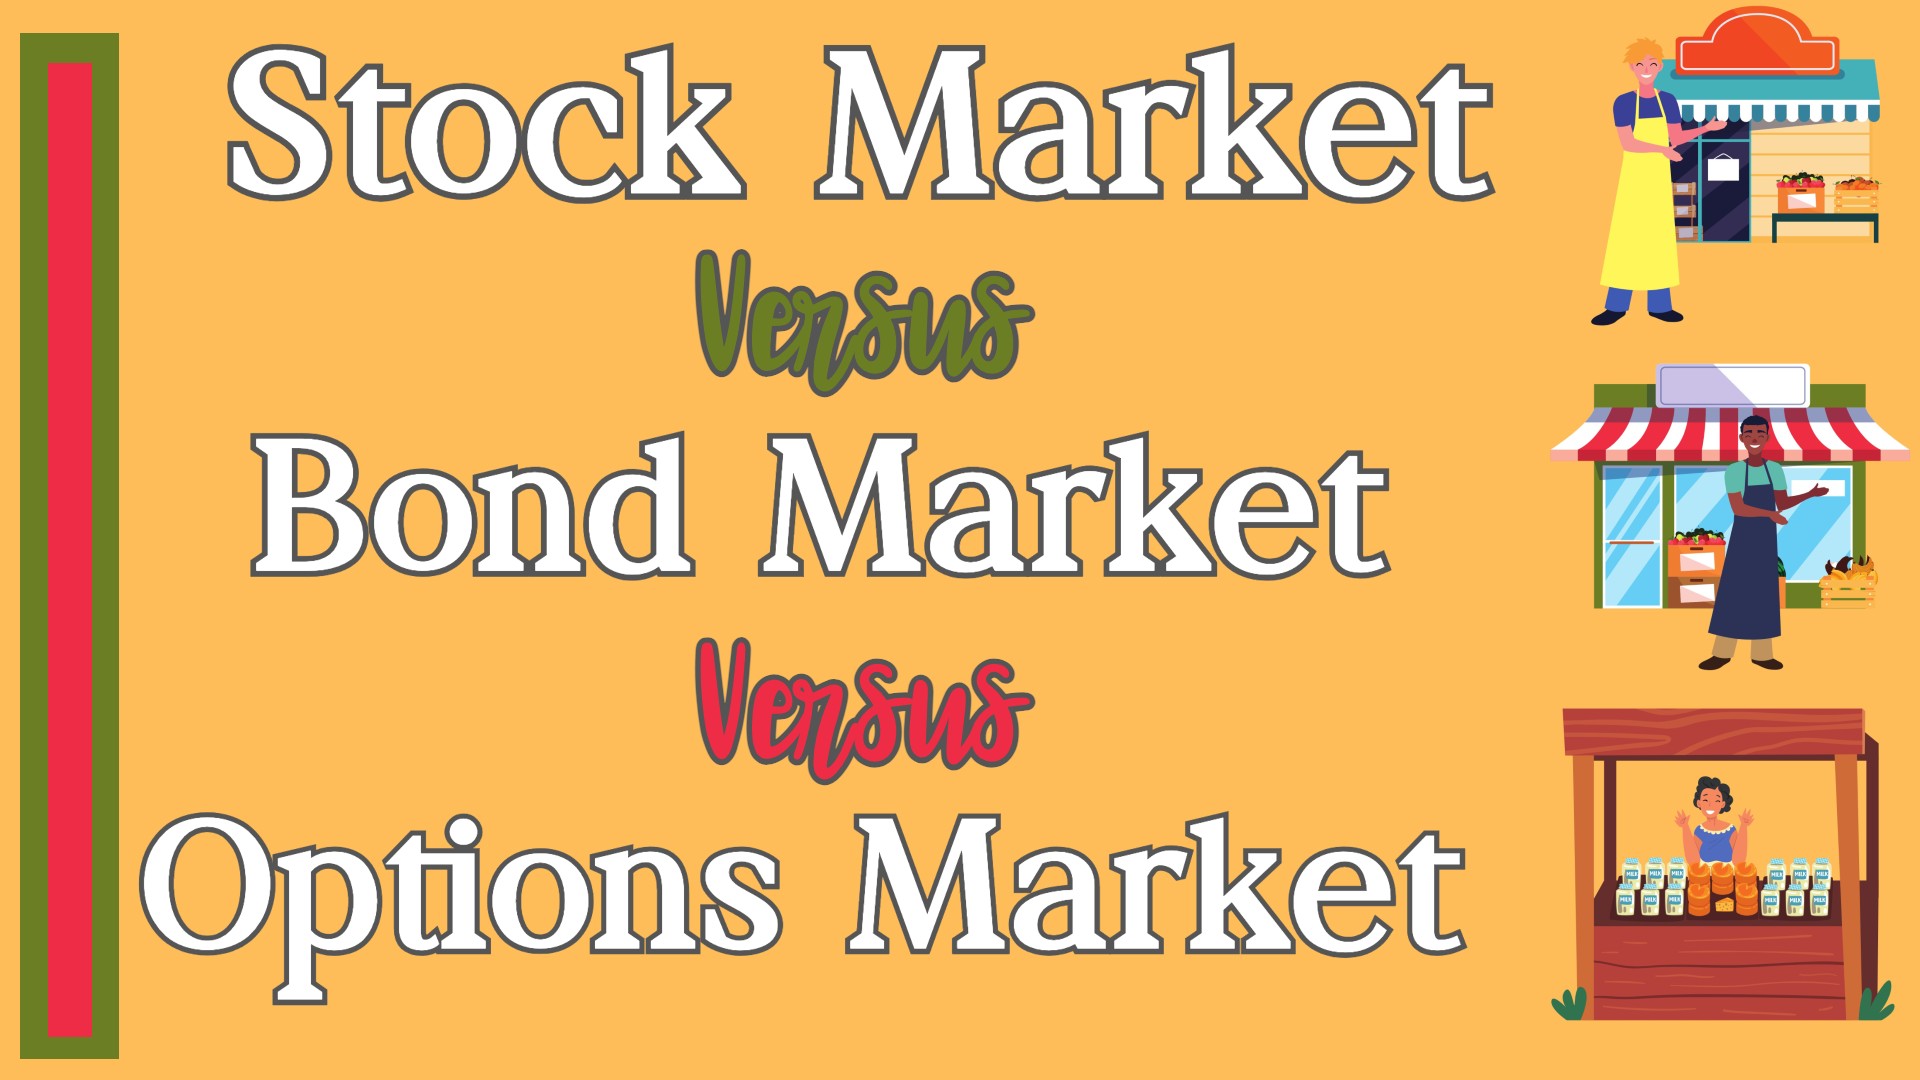 Stock Market vs Bond vs Options